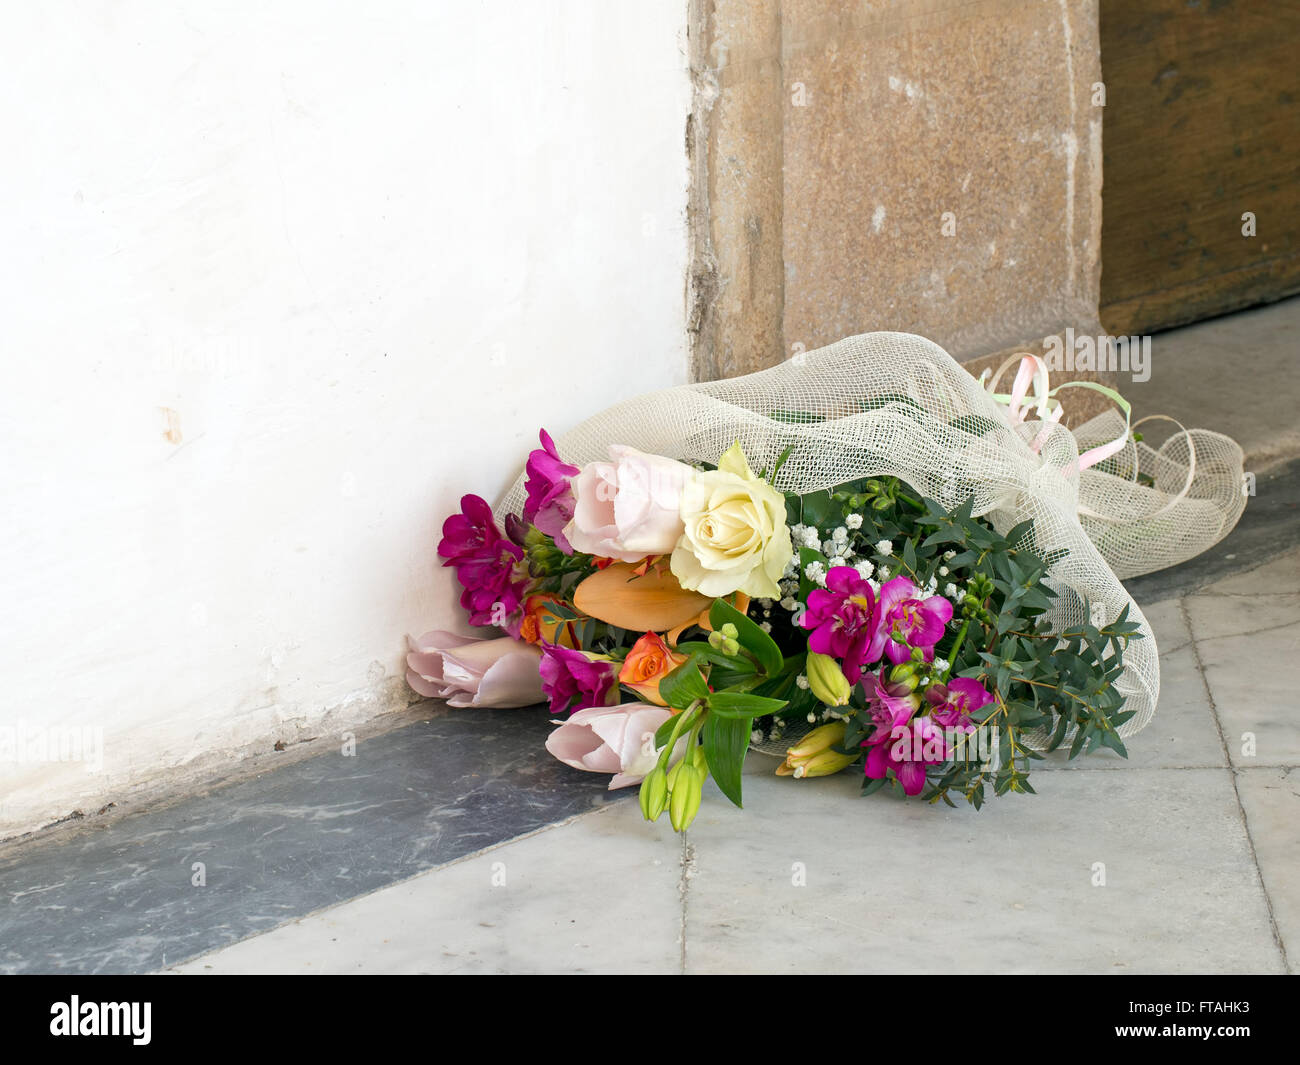 Bellissimi fiori all'esterno della Chiesa sulla terra. Jilted sposa forse? Foto Stock